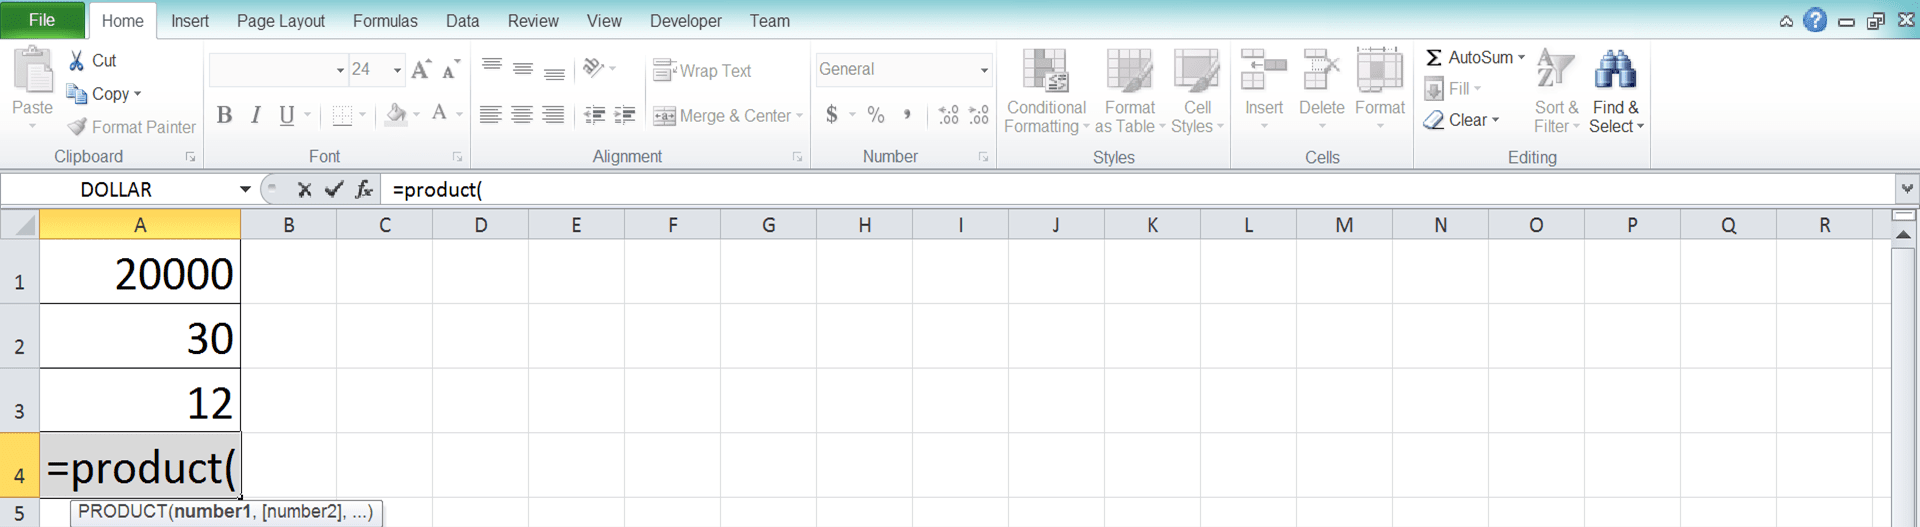 Cara Menggunakan Rumus PRODUCT Excel: Fungsi, Contoh, dan Langkah Penulisan - Screenshot Langkah 2